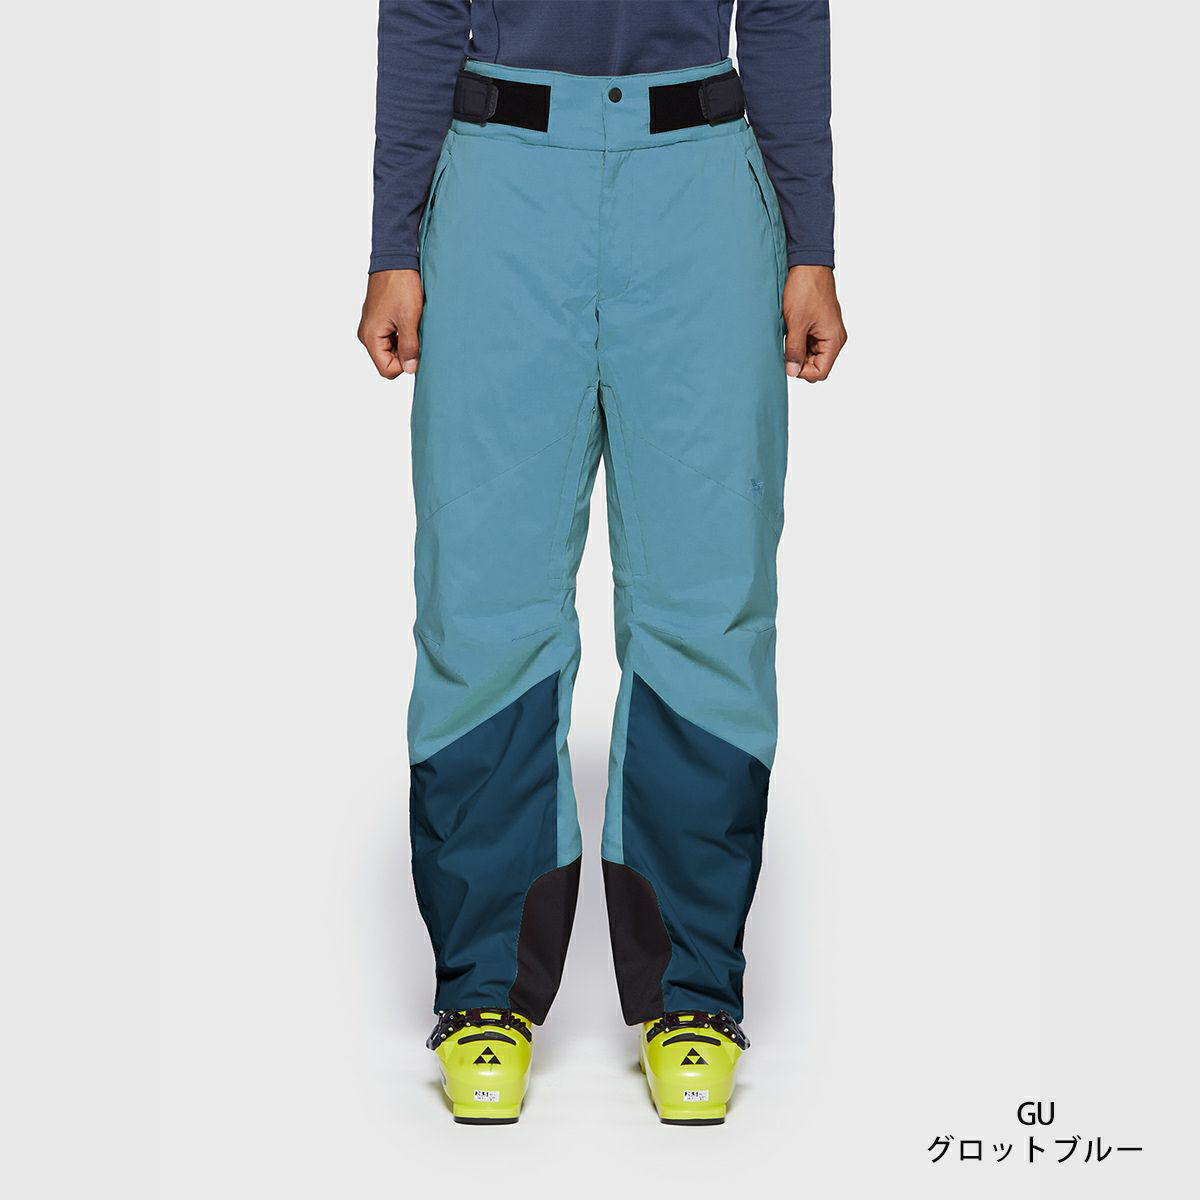 0円 【2021正規激安】 GOLDWIN ゴールドウィン スキーウェア スノボ パンツ Lサイズ メンズ